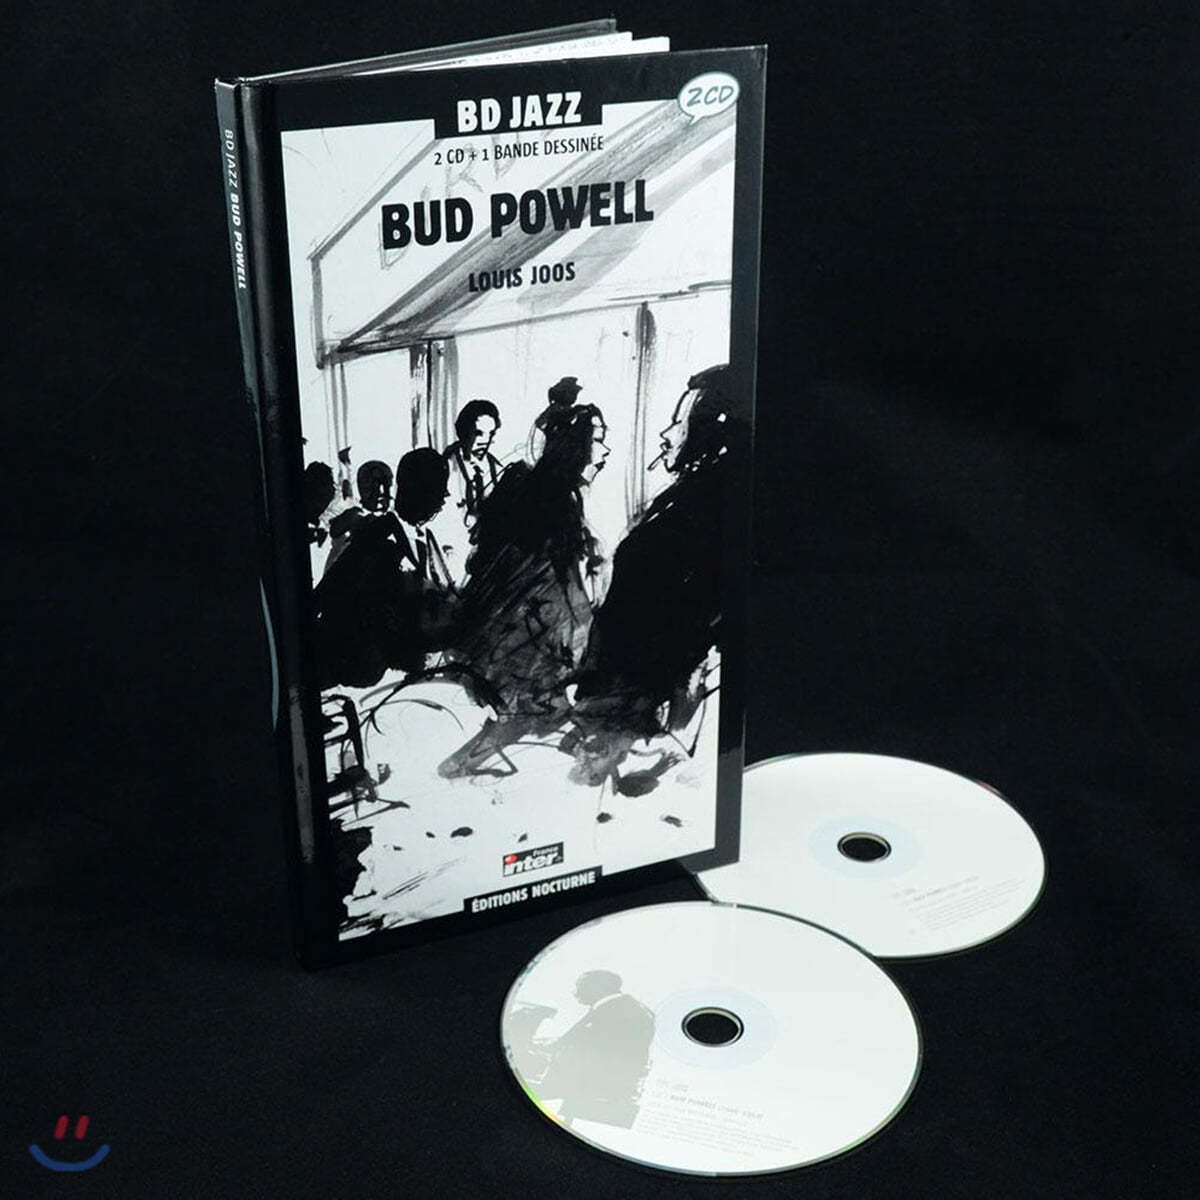 버드 파웰 연주 모음집 (Bud Powell - Illustrated by Louis Joos 루이스 요스)